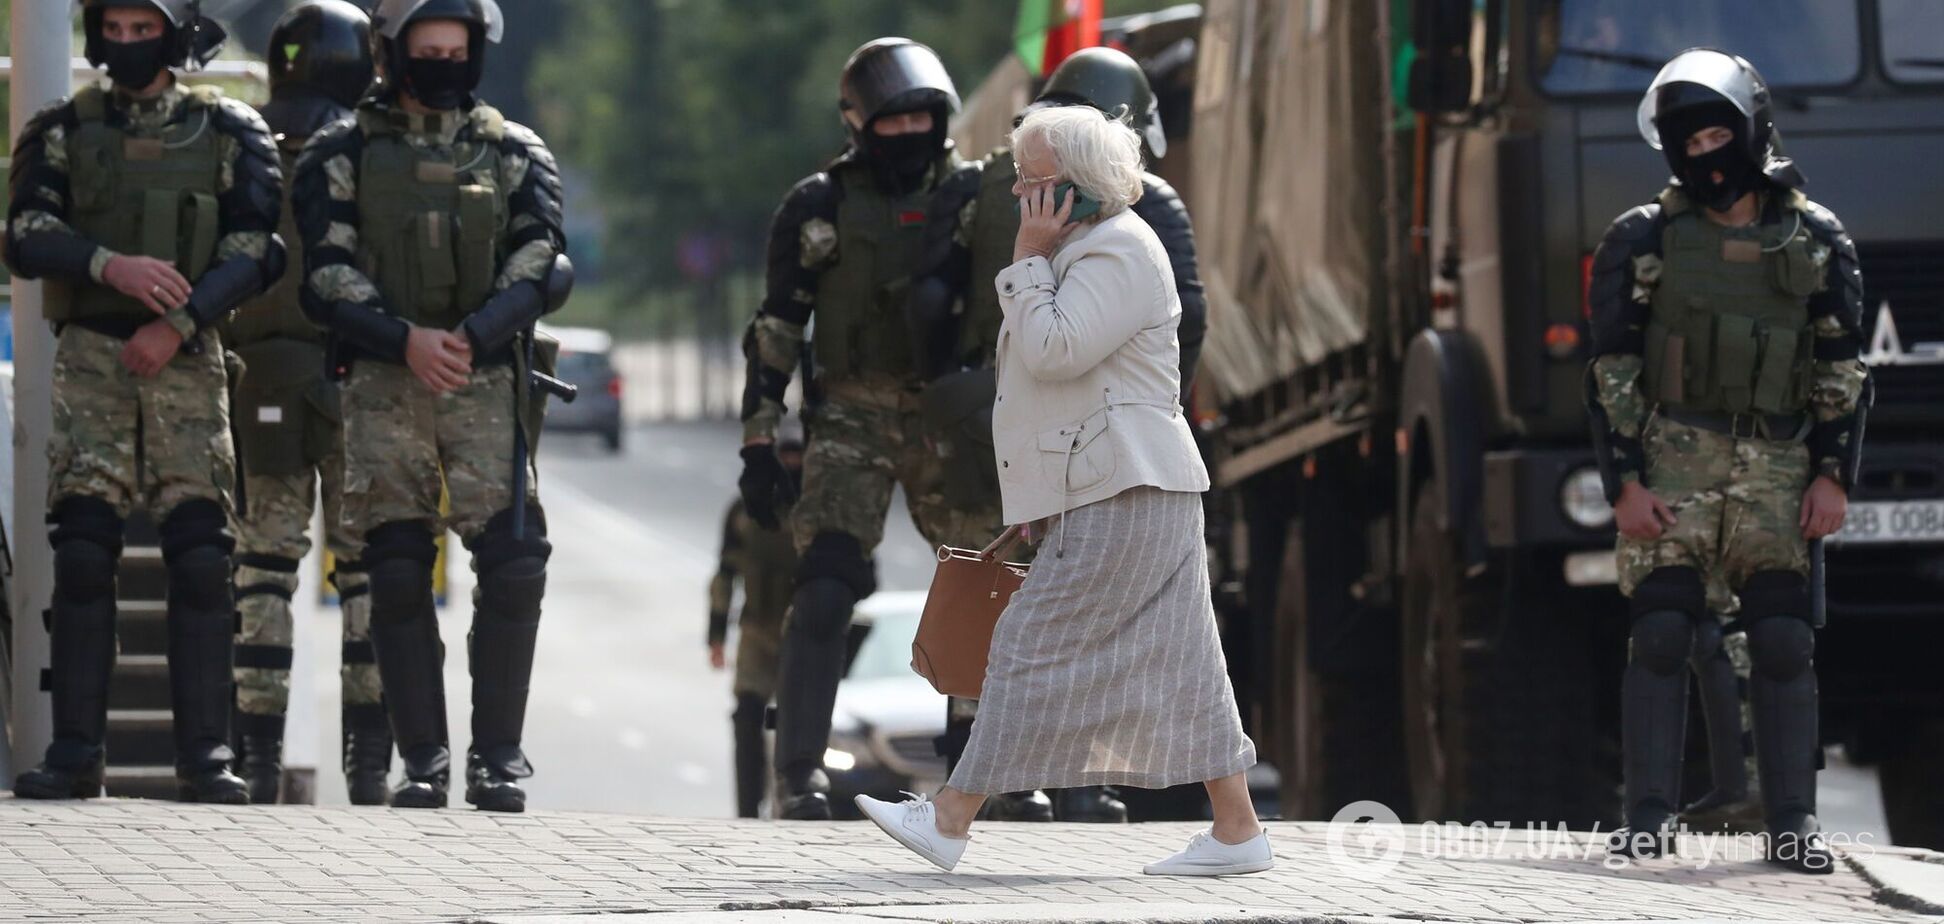 В центре Минска протестующие начали строить баррикады. Видео